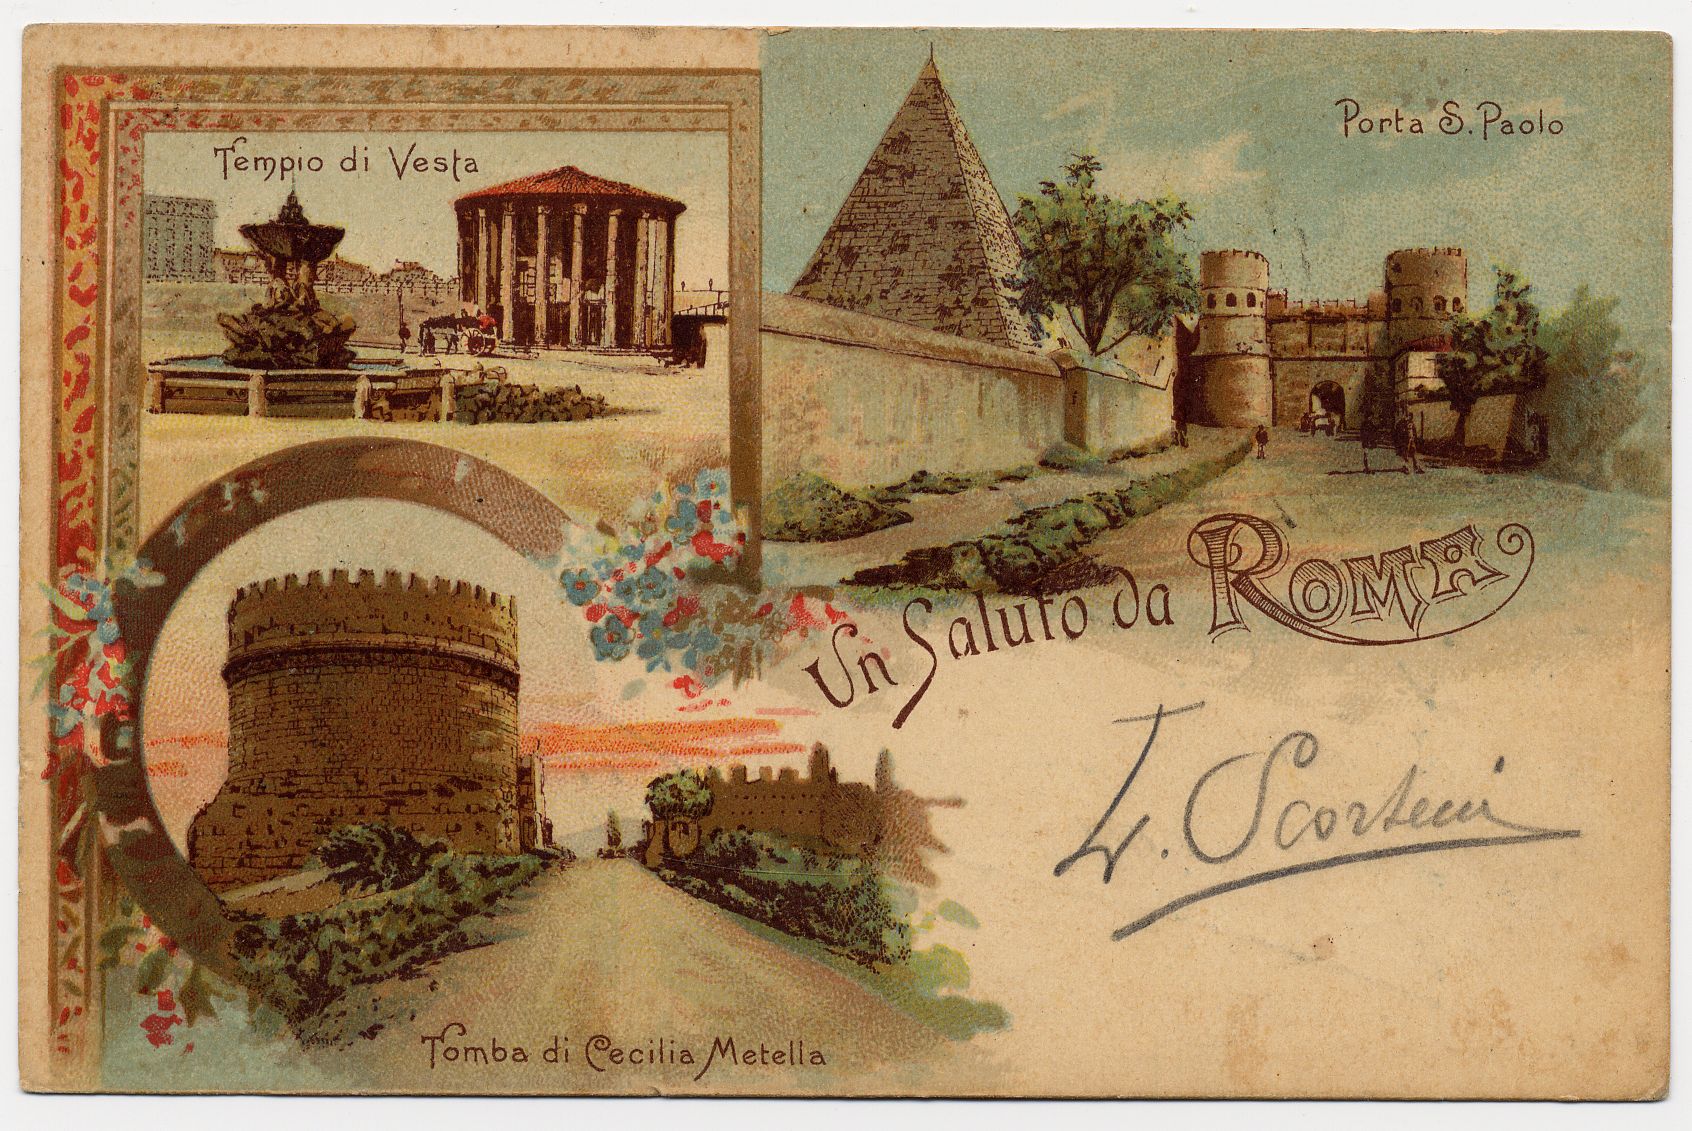 Cartolina con l’immagine della tomba di Cecilia Metella